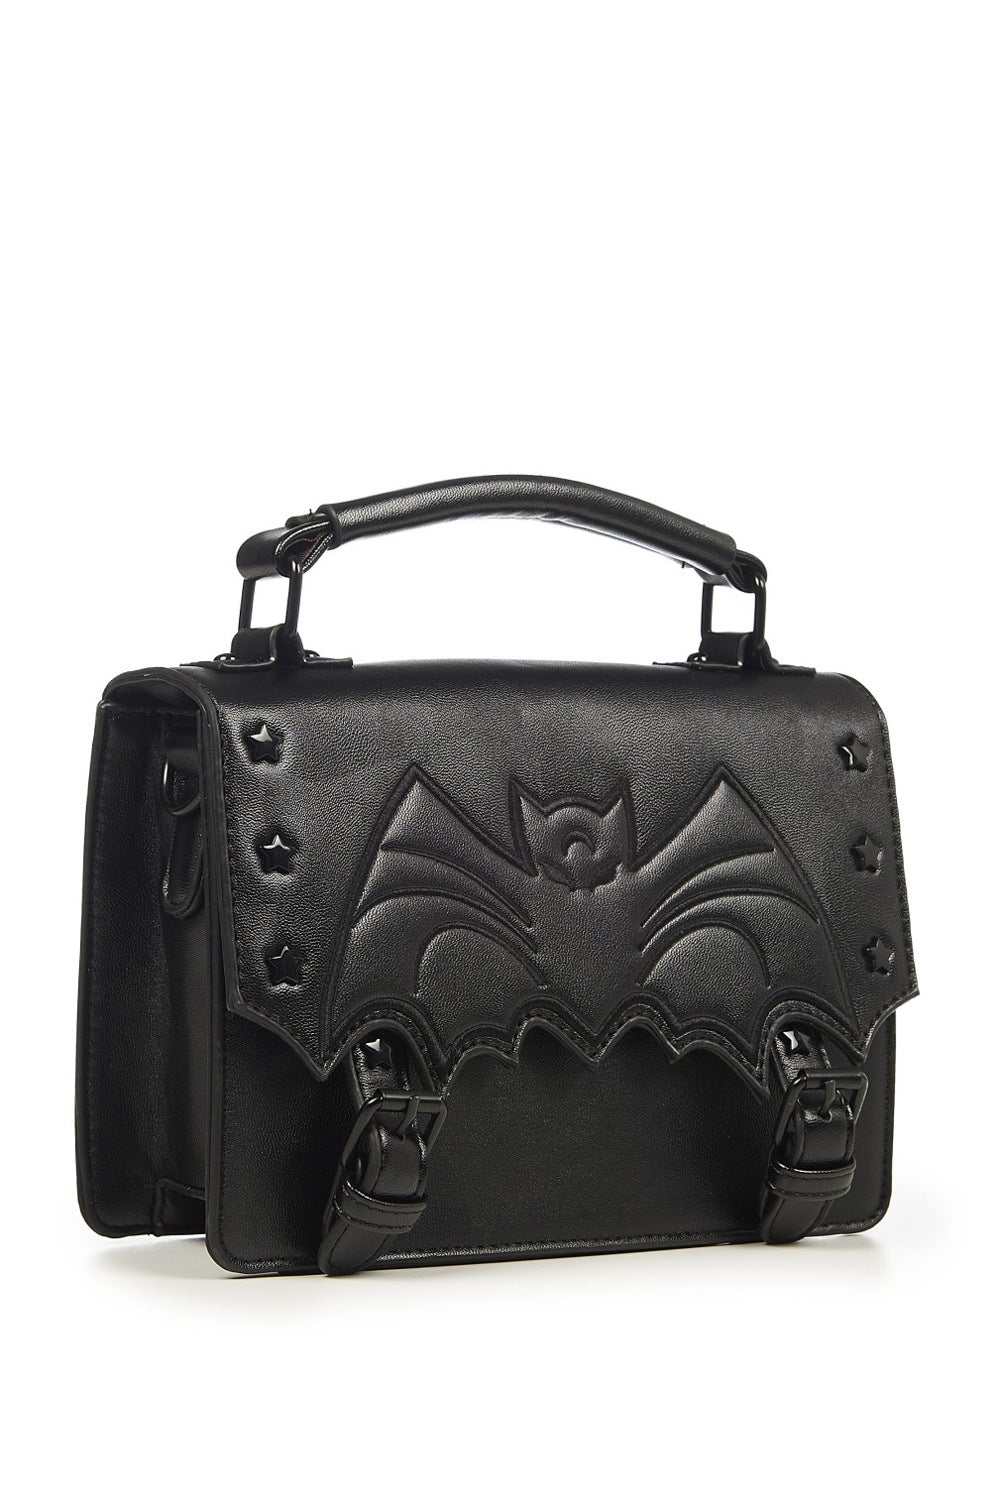 Banned Alternative Bat Nocturne Bag